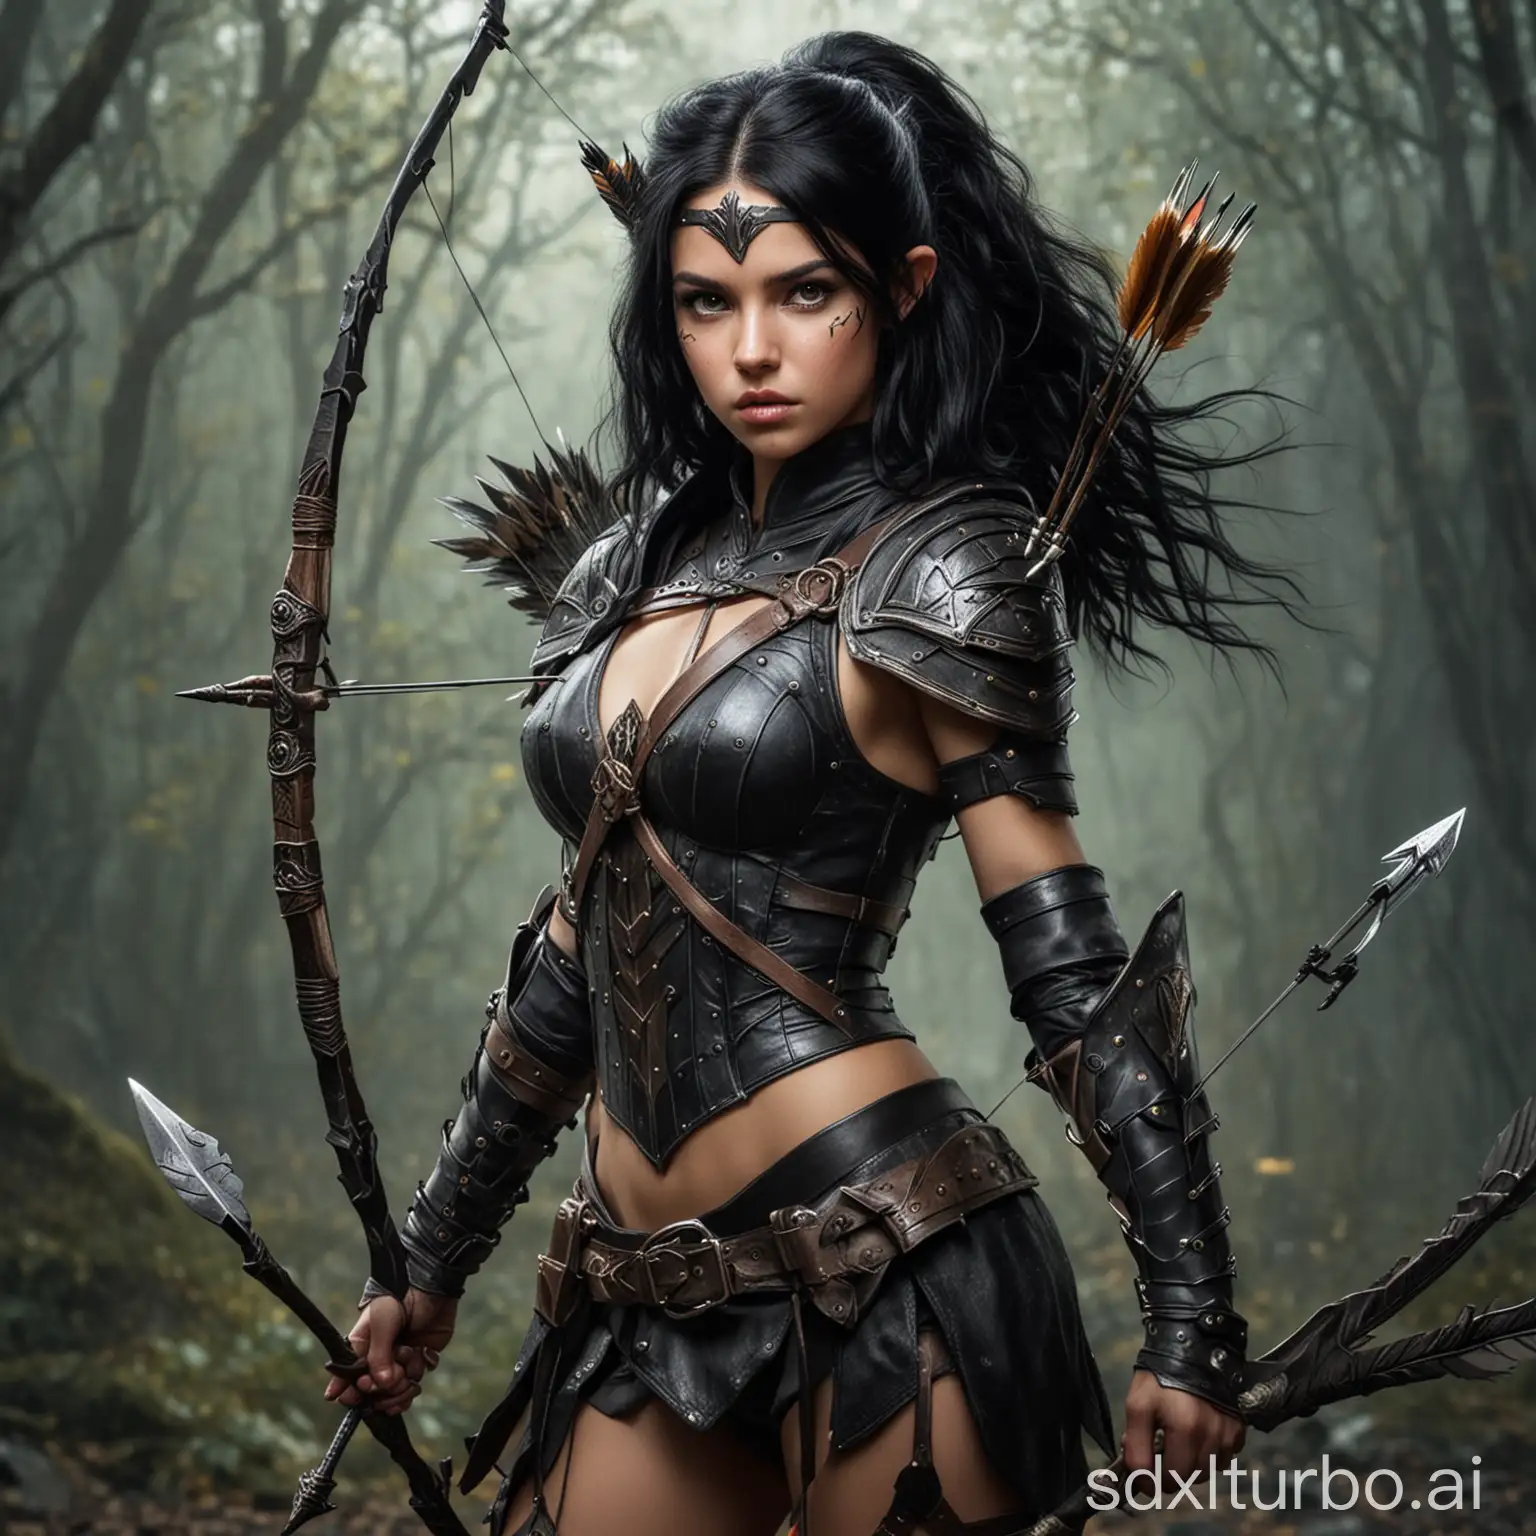 Fantasie junge Jägerin mit Pfeil und Bogen mit schwarzen Haaren und ein Krieger in Rüstung mit Spieß als Waffe als Team